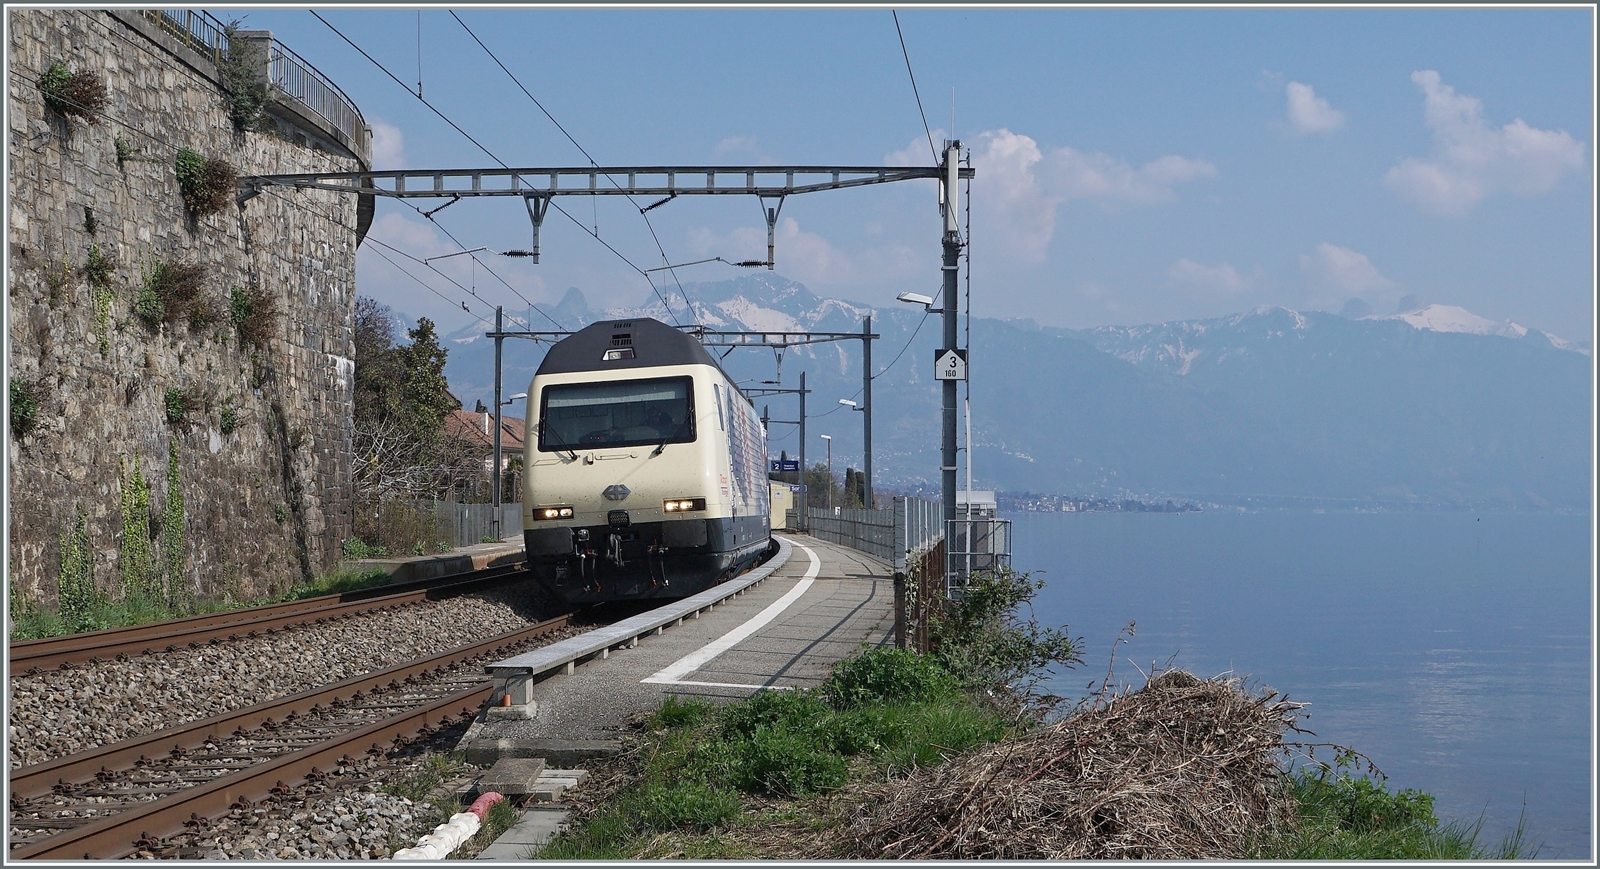 175 Jahre Schweizer Bahnen, und zum Jubiläum wurde neben einer Re 4/4 II auch diese SBB Re 460 019 mit einer Jubiläumsfolie beklebt. Die SBB Re 460 019 mit dem IR 90 1720 bei St-Saphorin.

25. März 2022 